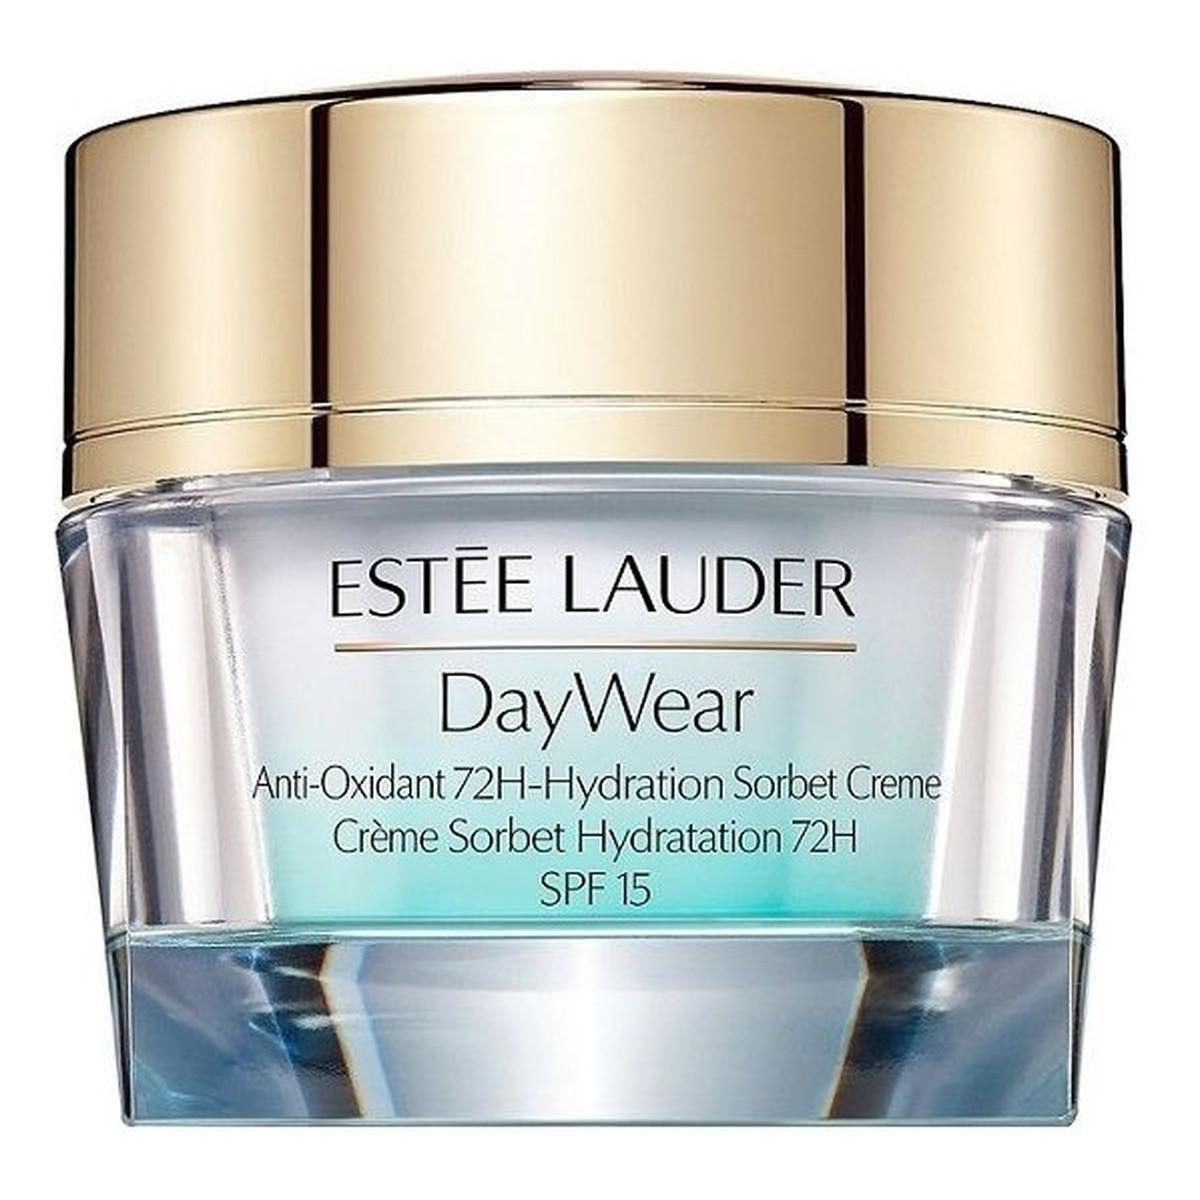 Estee Lauder DayWear Anti-Oxidant 72H-Hydration Sorbet Creme SPF15 nawilżający krem do twarzy 30ml